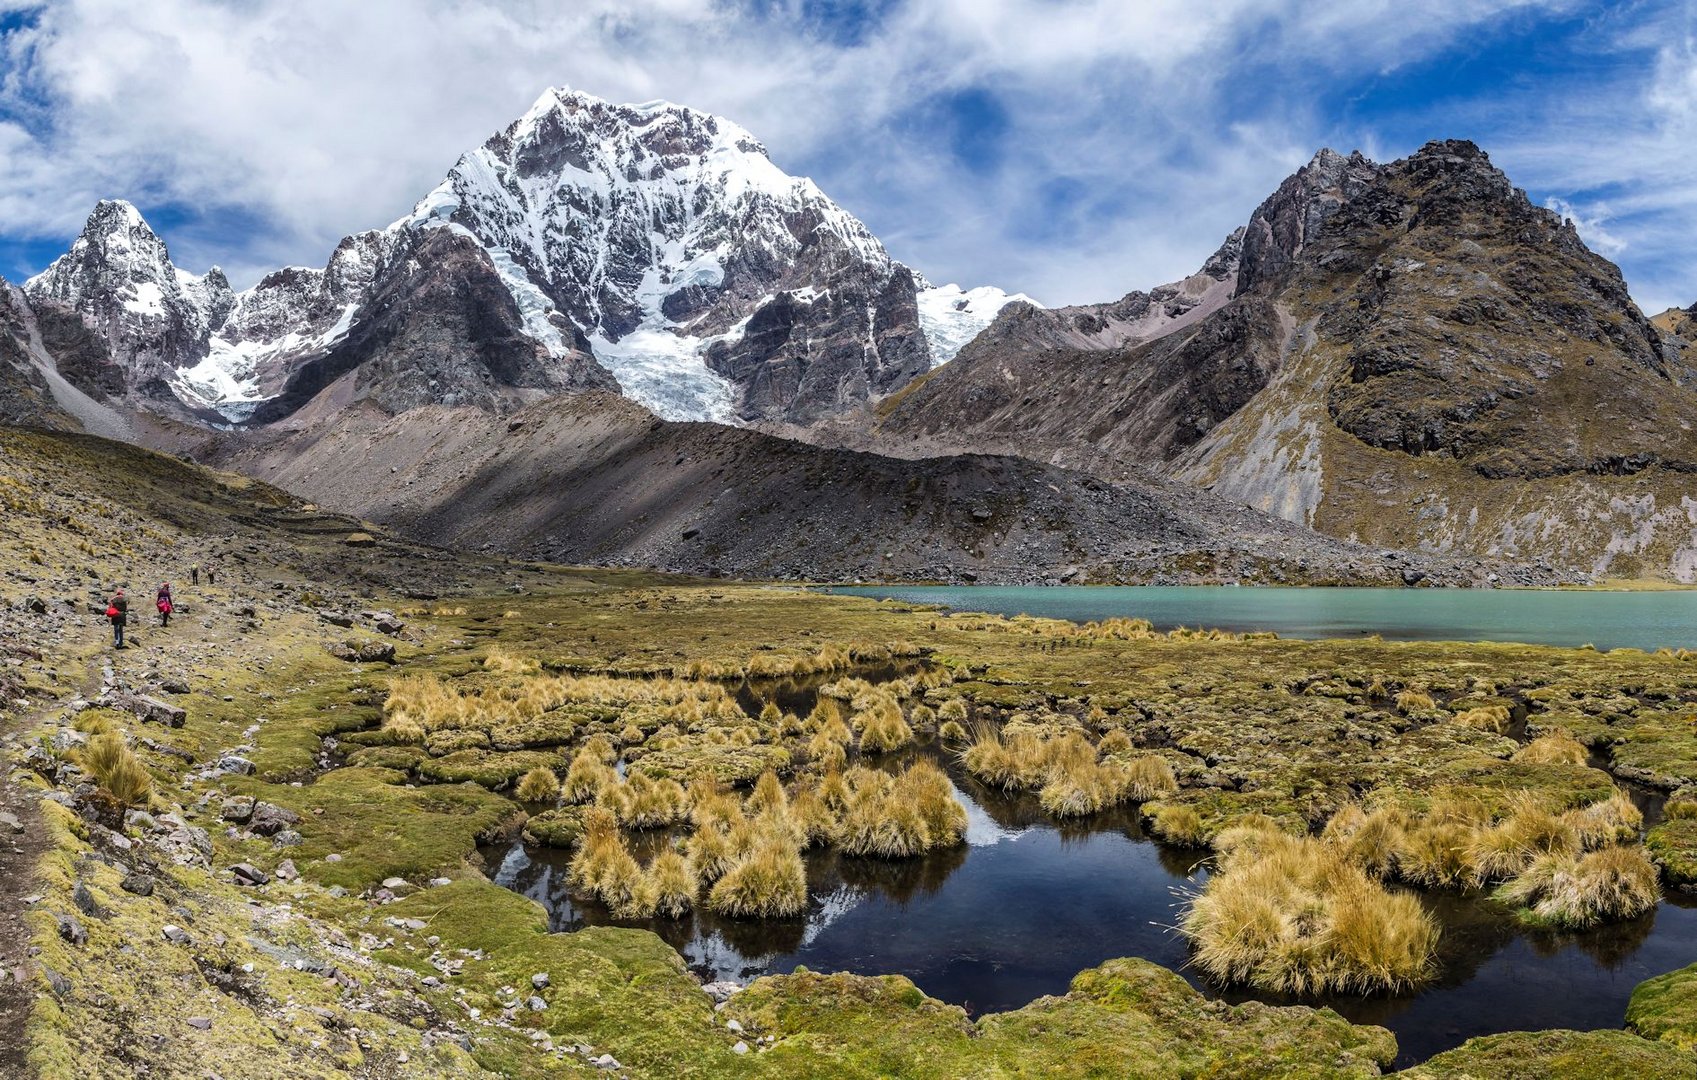 Azulcocha, Kleiner See am Fusse der Anden in Peru